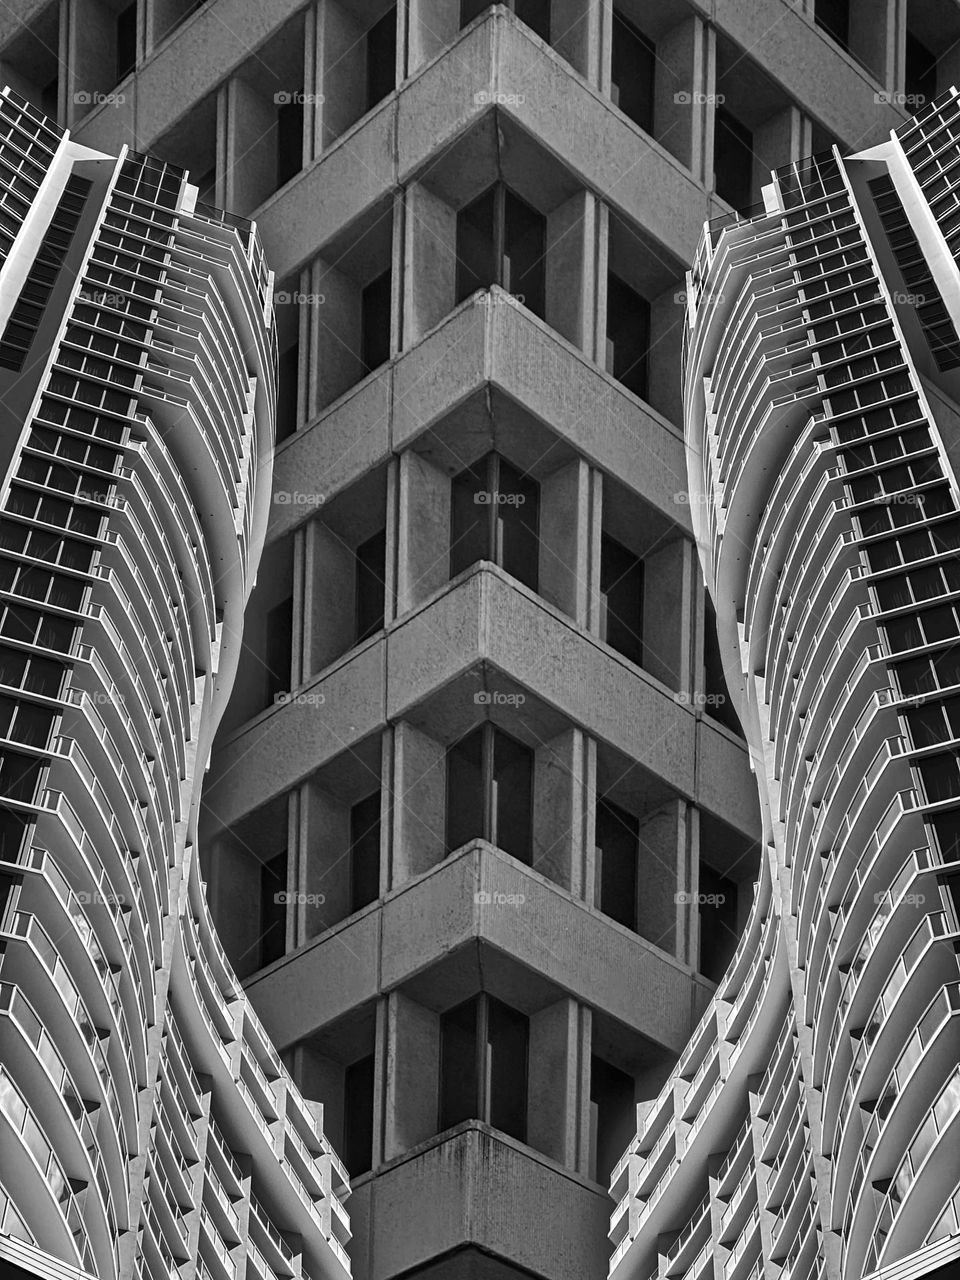 Symmetrical buildings 